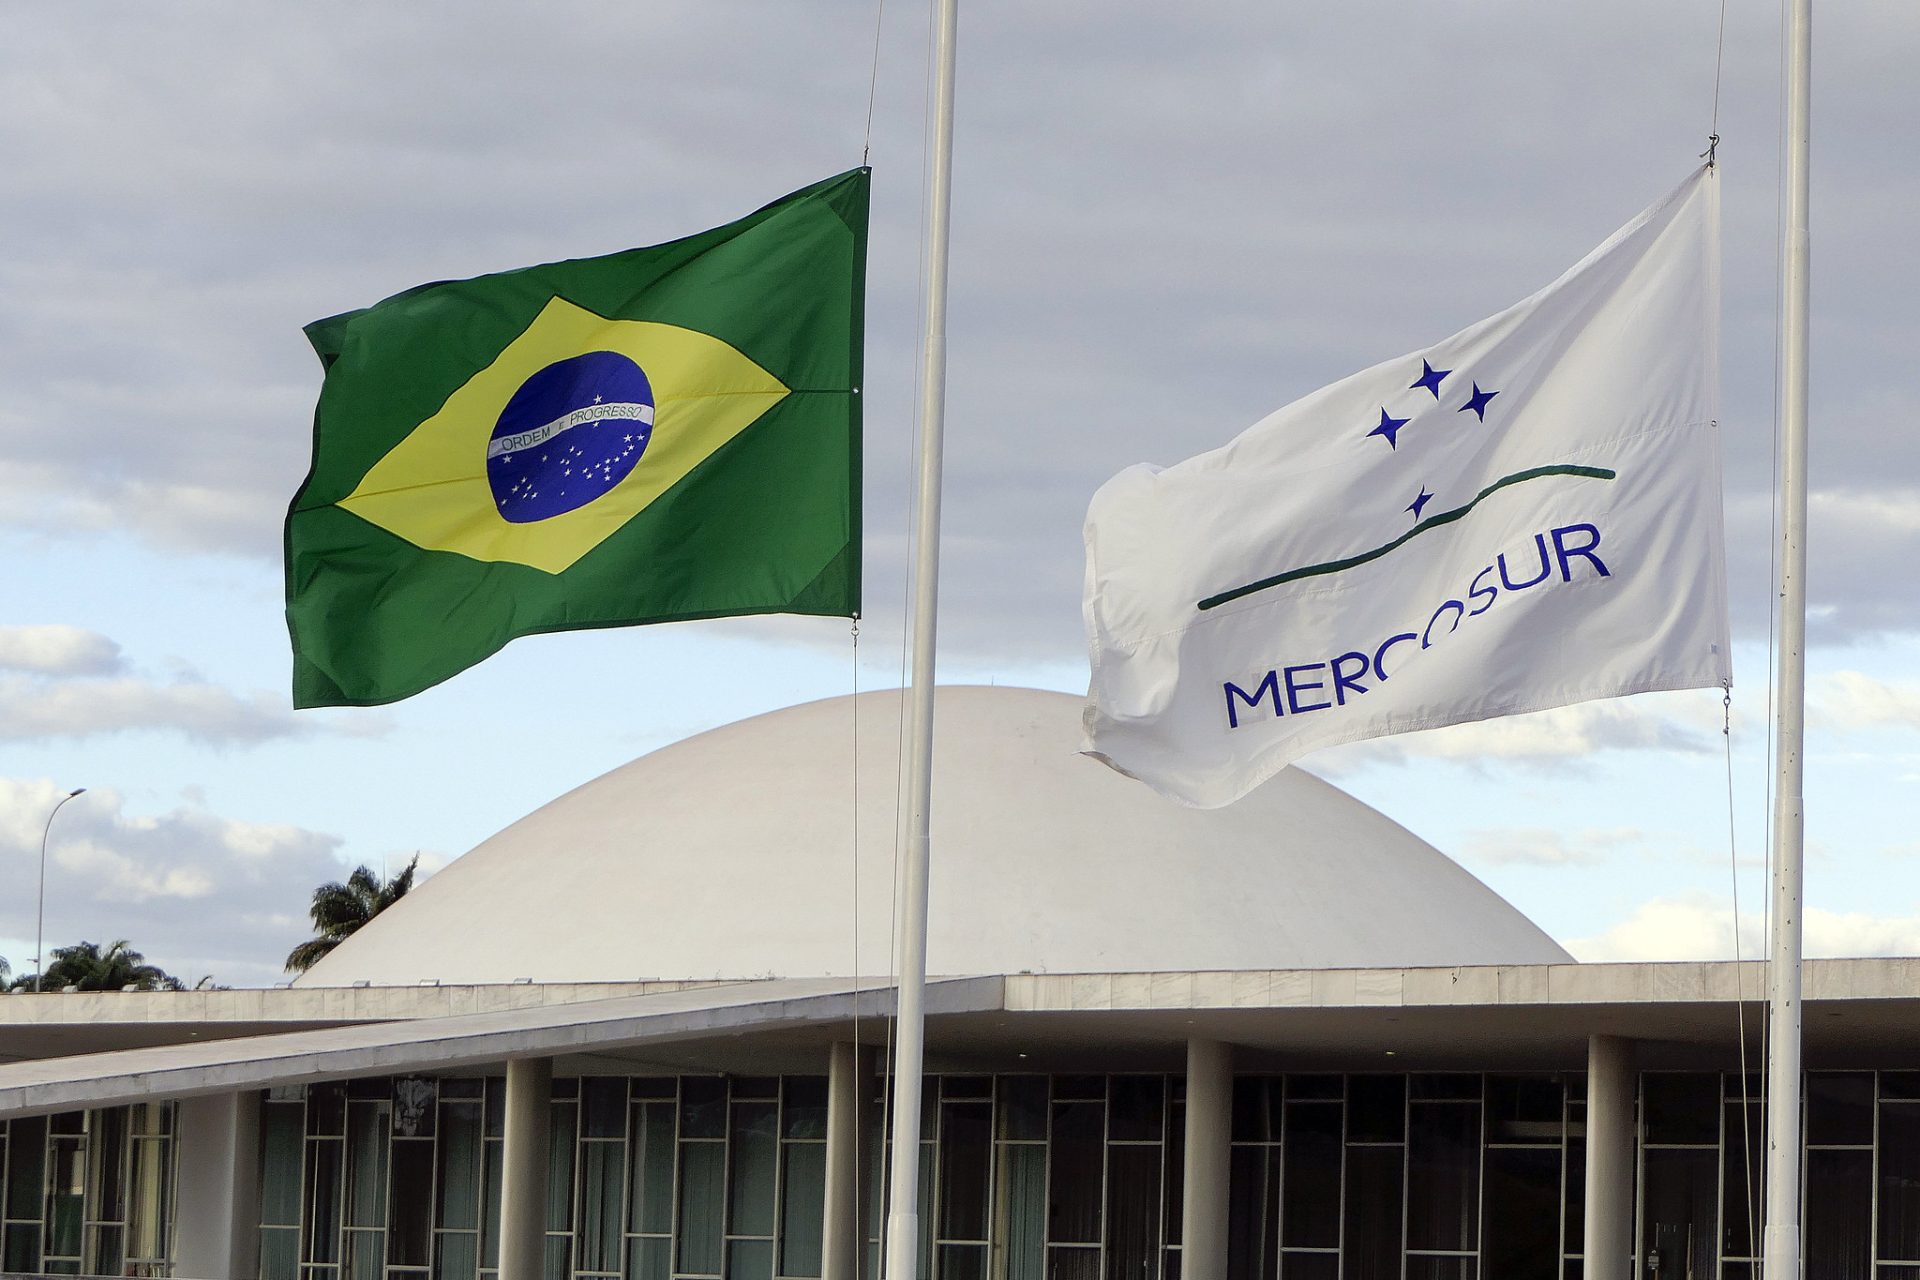 Bandeira do Mercosul no Congresso Nacional - Foto: Roque de Sá/Agência Senado